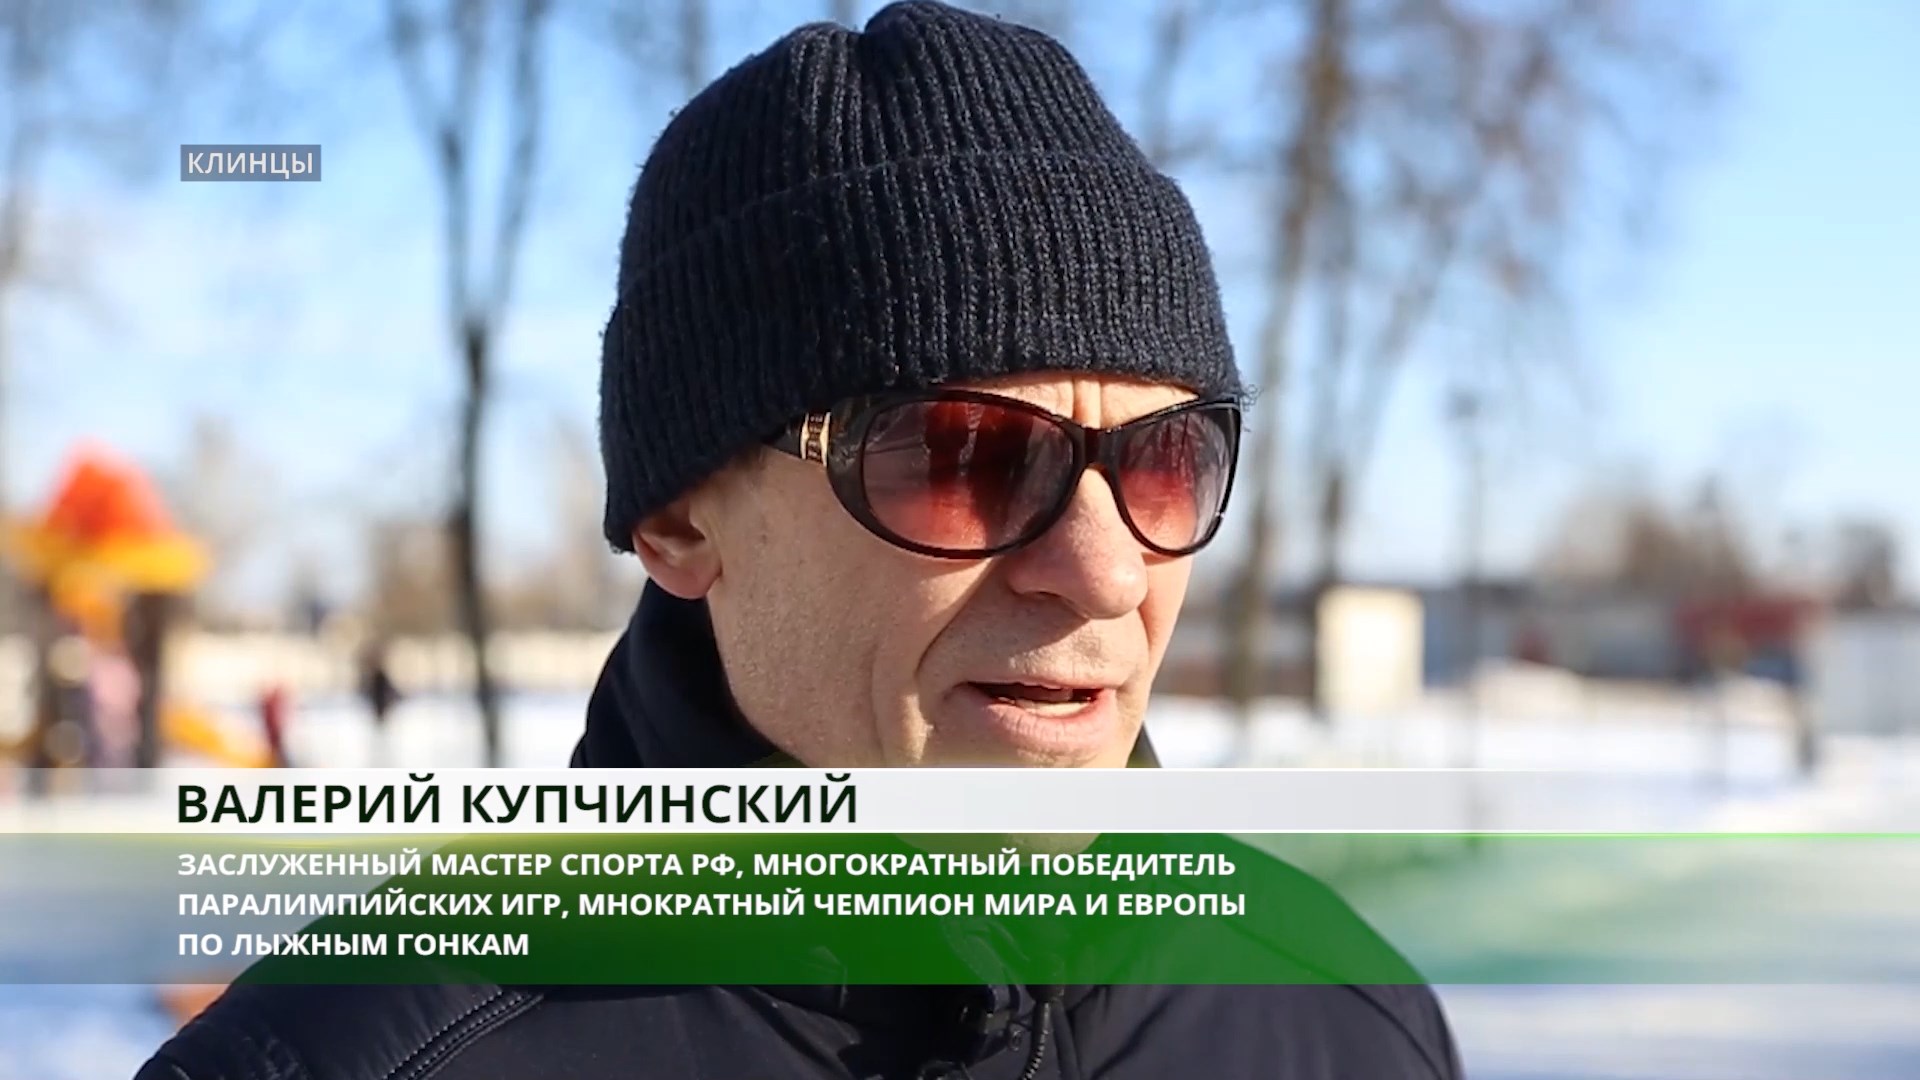 Брянский лыжник-паралимпиец Валерий Купчинский порадовался успехам земляка Александра Большунова